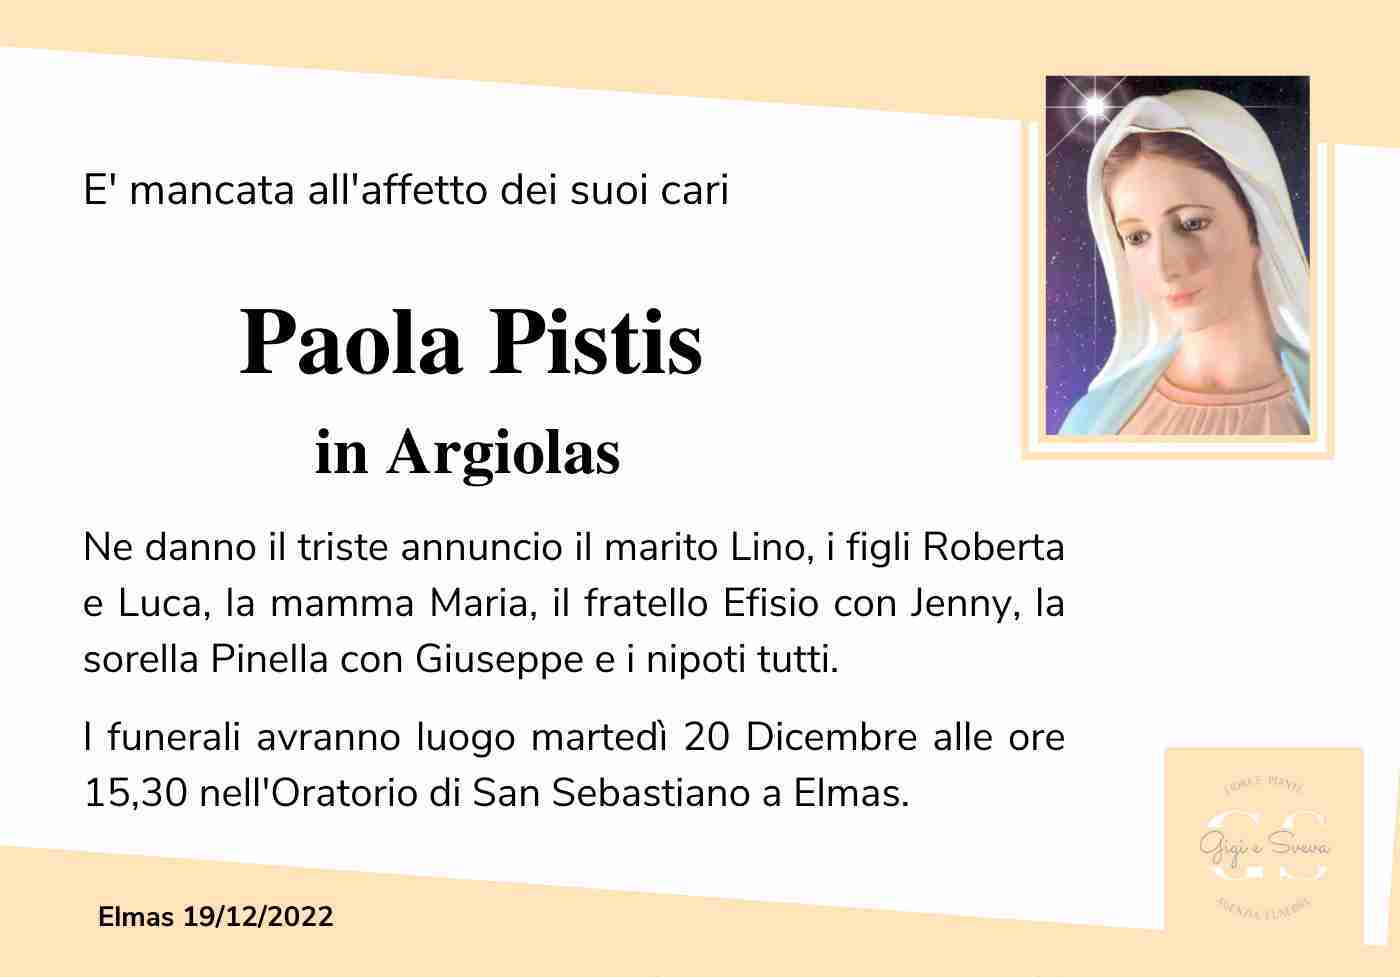 Paola Pistis